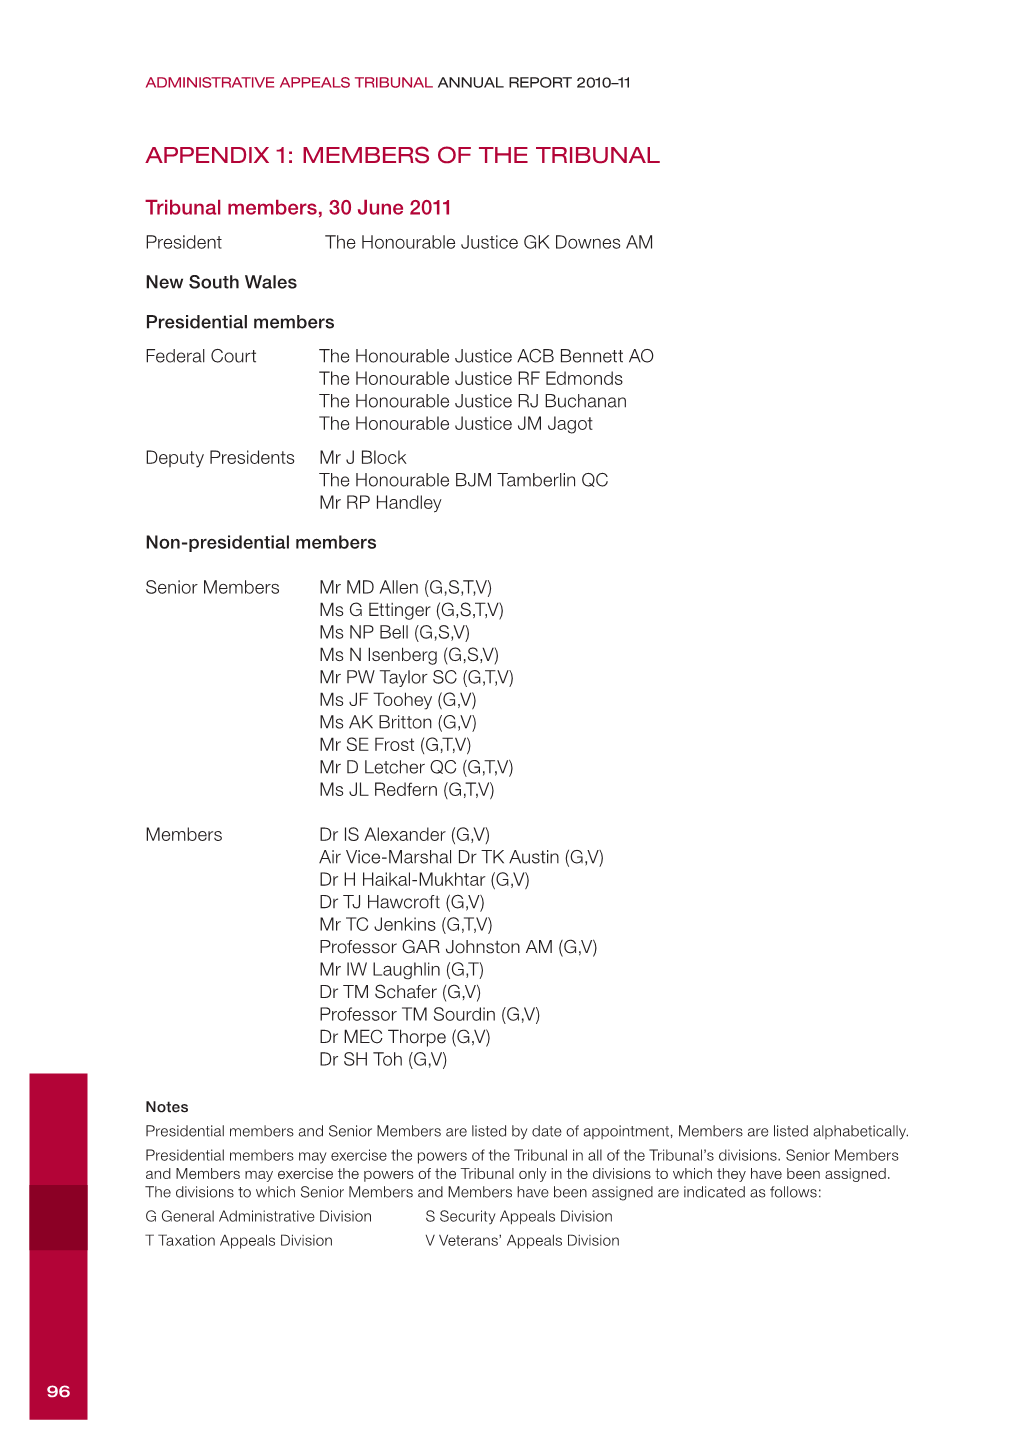 AAT Annual Report 2010-11 Appendix 1 Members of the Tribunal [PDF